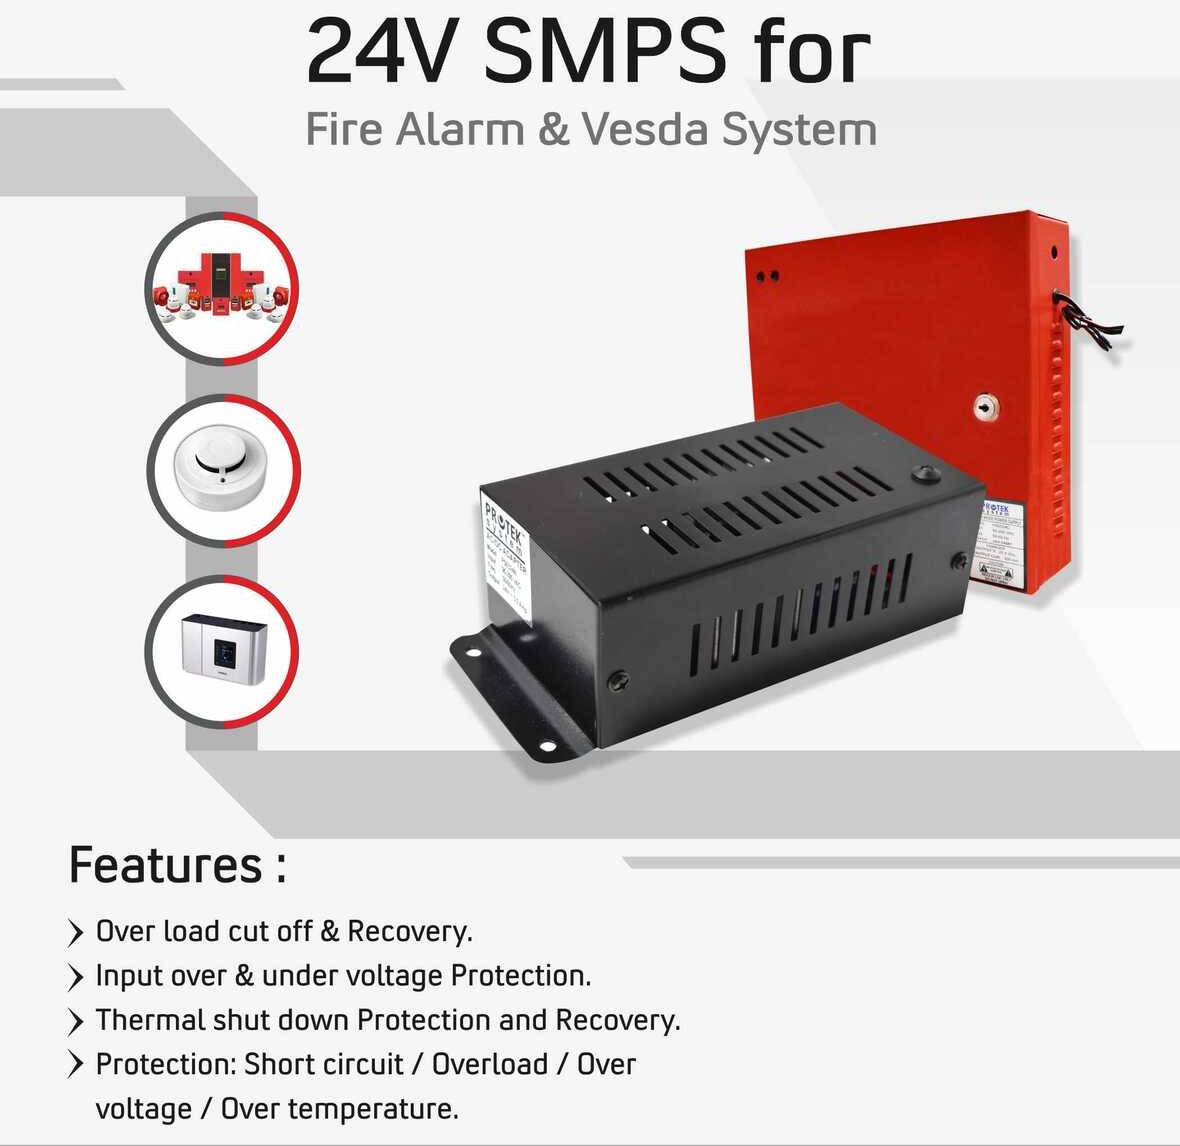 24v smps fire alarm vesda system